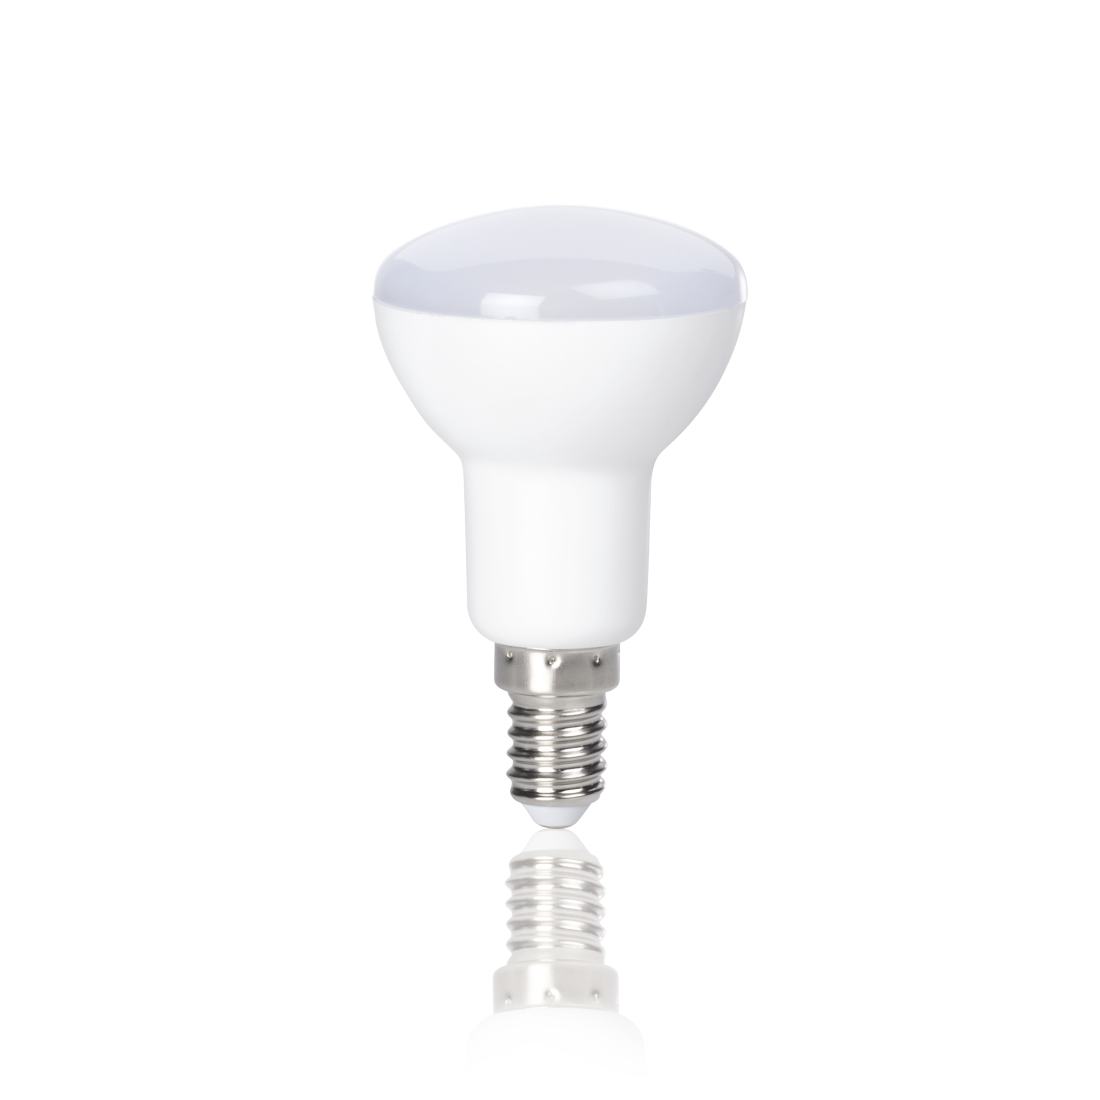 abx2 Druckfähige Abbildung 2 - Xavax, LED-Lampe, E14, 450lm ersetzt 39W, Reflektorlampe R50, Warmweiß, 2 Stück